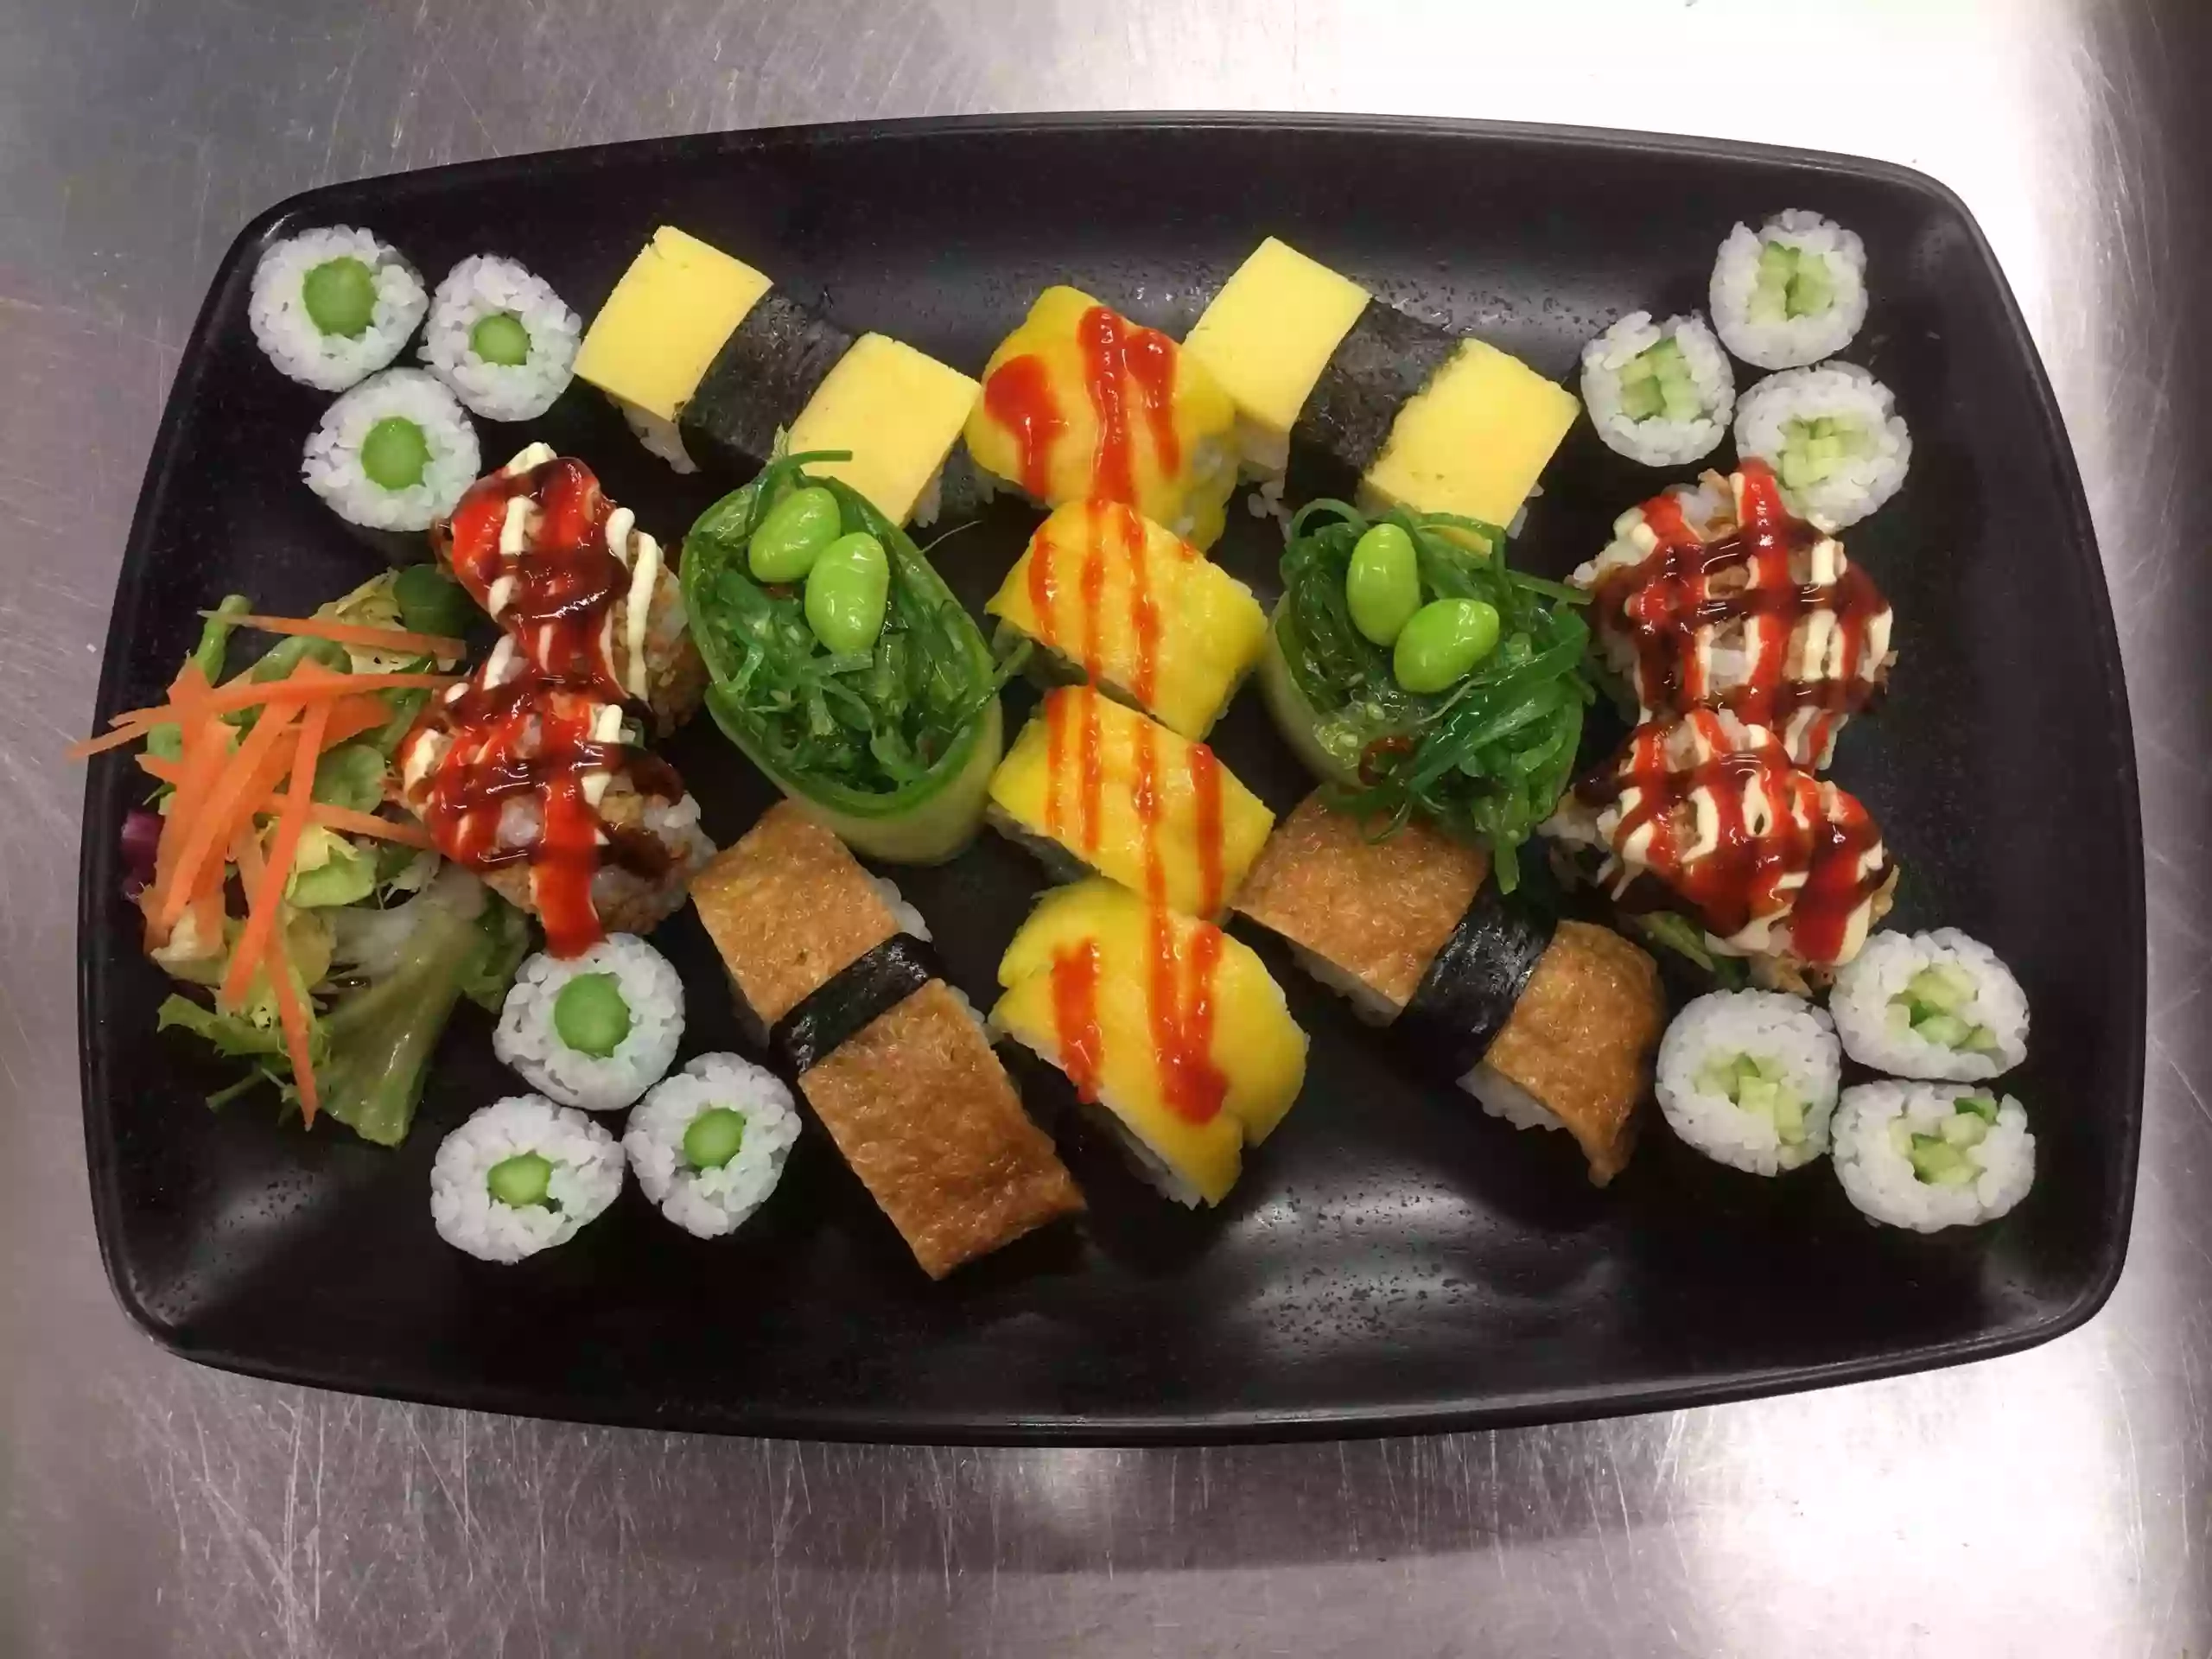 Yamazaki Sushi Bar